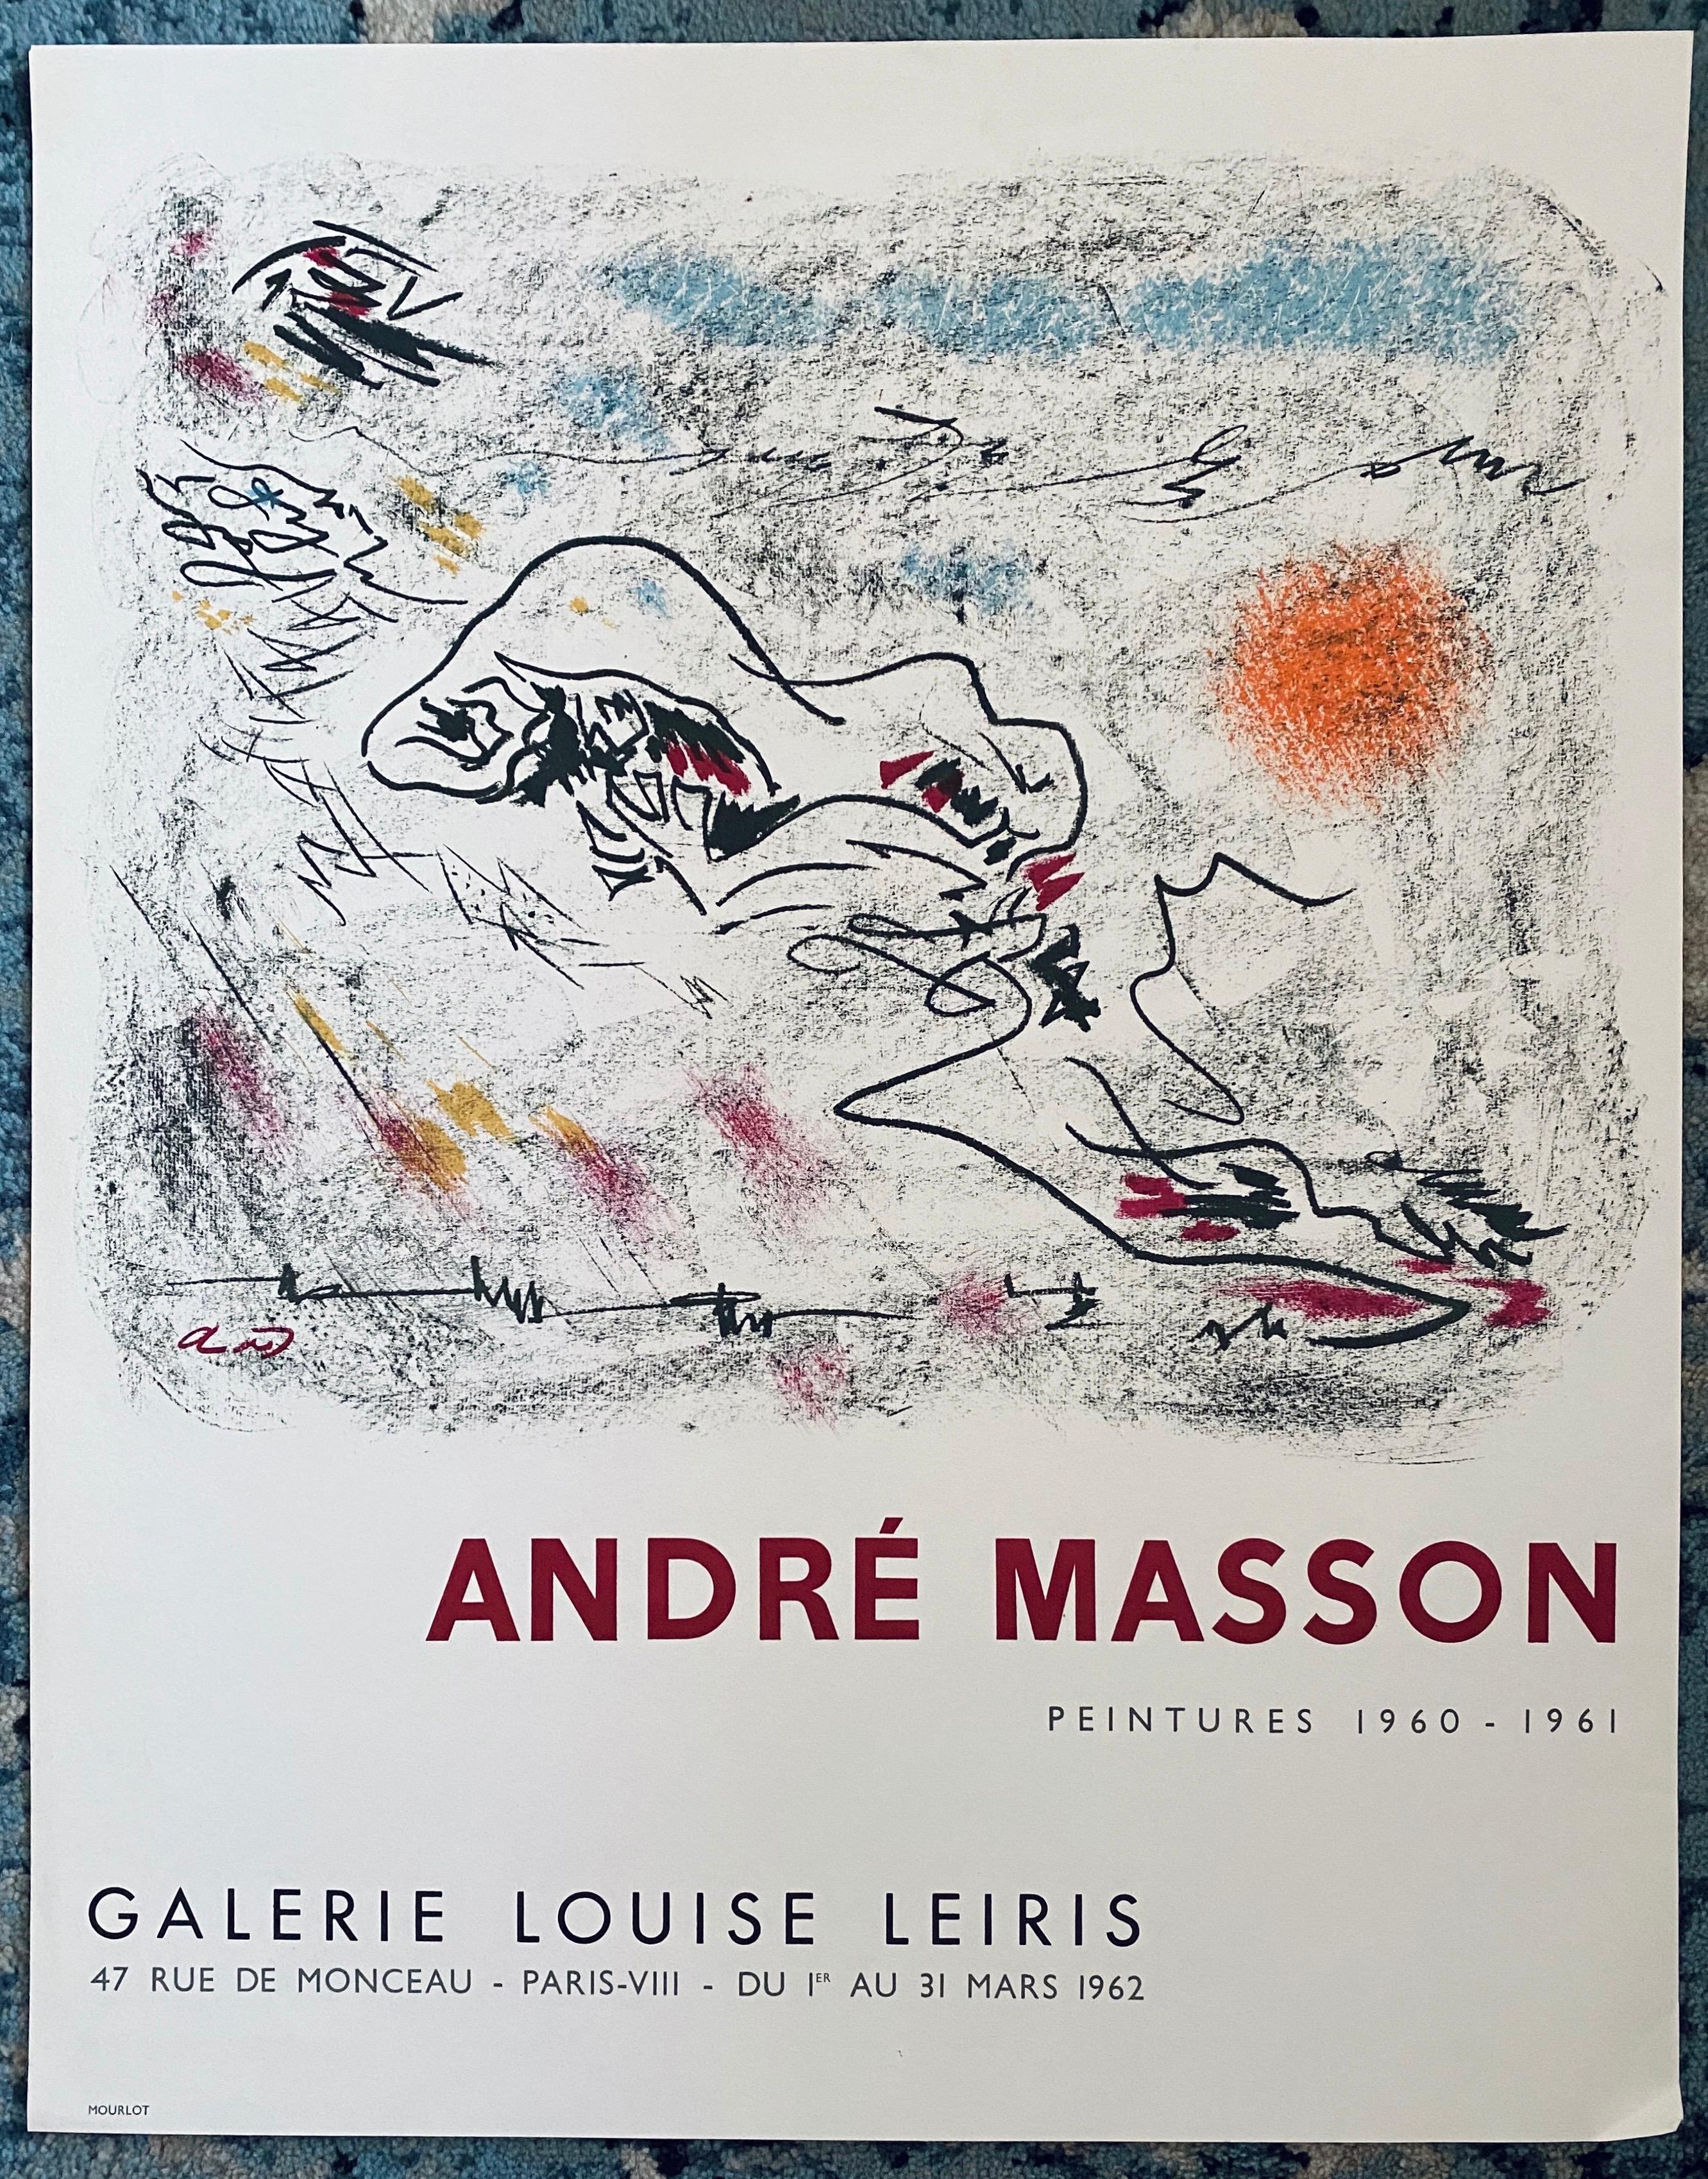 André-Aimé-René Masson (4 janvier 1896 - 28 octobre 1987) était un artiste français.

Masson est né à Balagny-sur-Thérain, dans l'Oise, mais lorsqu'il a huit ans, le travail de son père conduit la famille d'abord brièvement à Lille, puis à